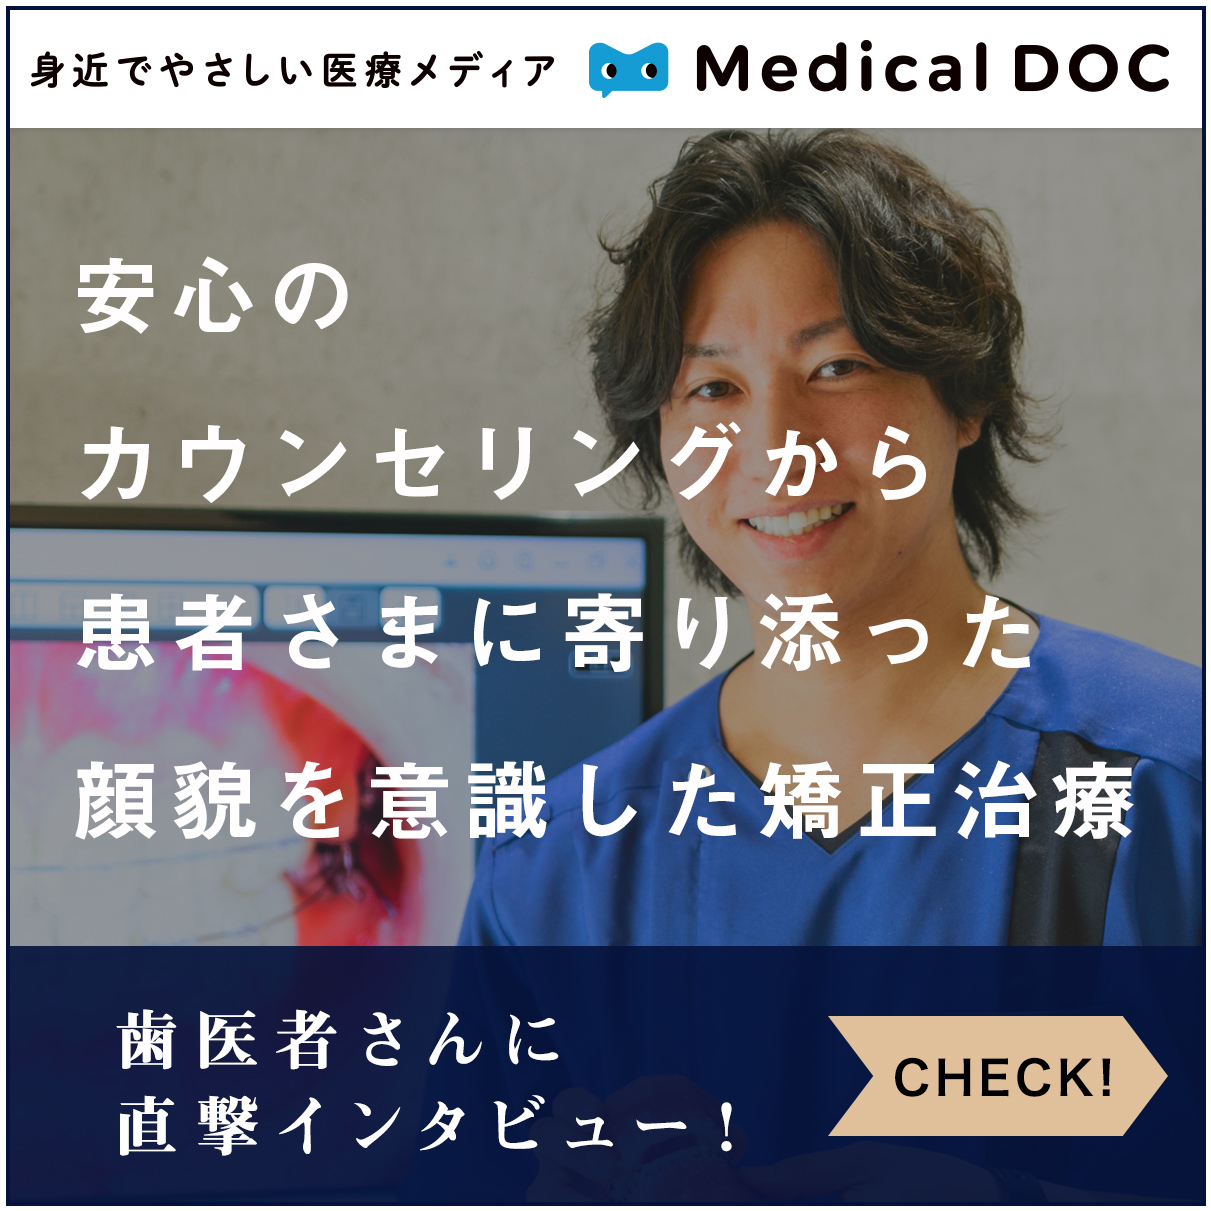 MedicalDOC